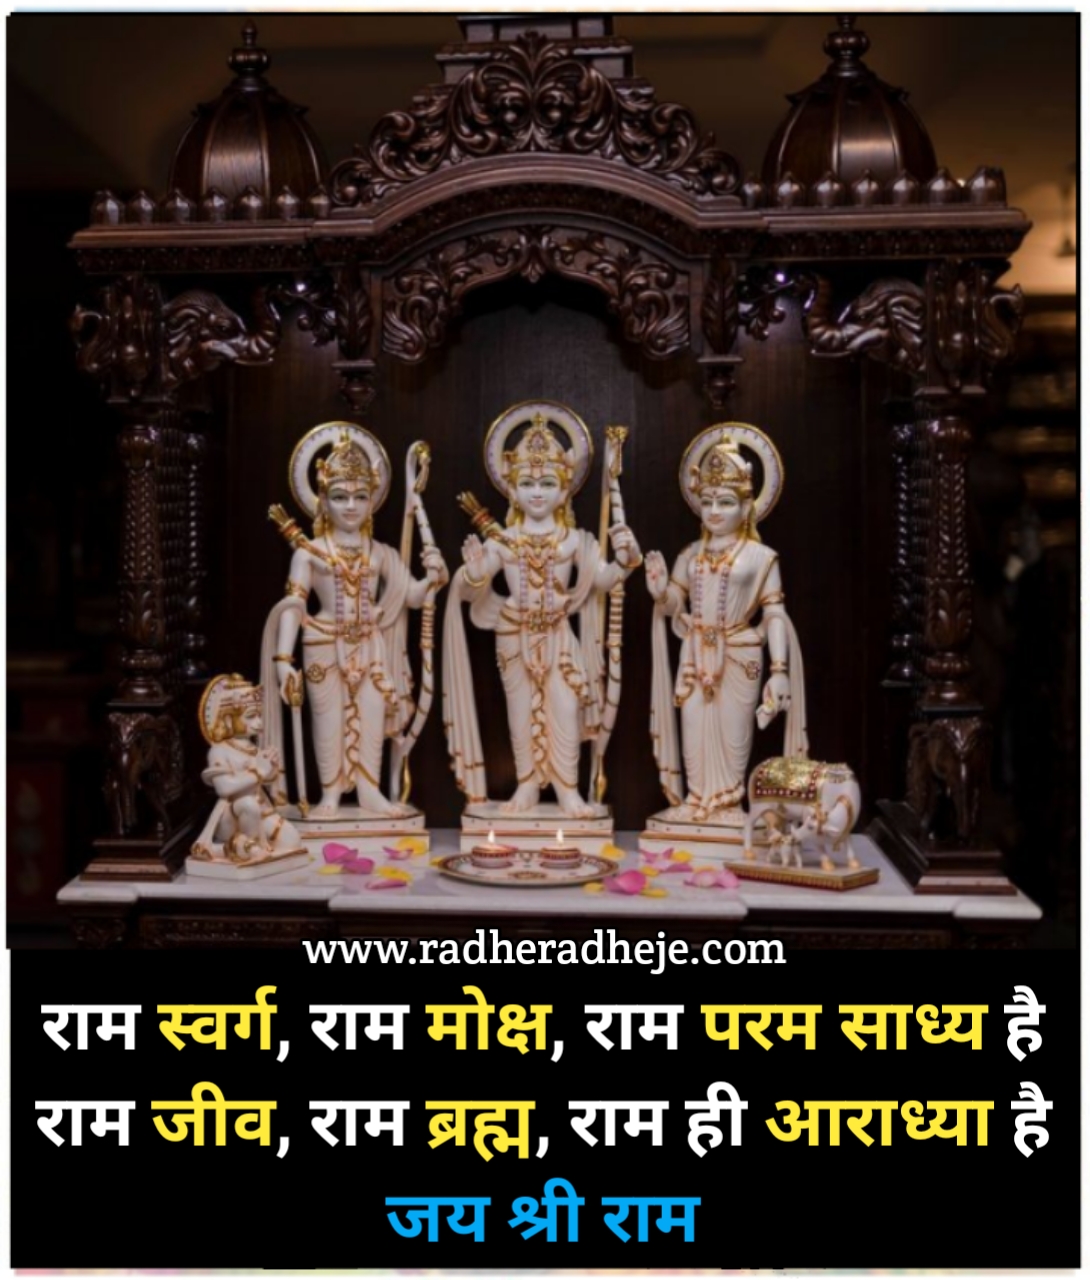 राम स्वर्ग राम मोक्ष राम परम साध्य है  राम जीव, राम ब्रह्म, राम ही आराध्या है जय श्री राम